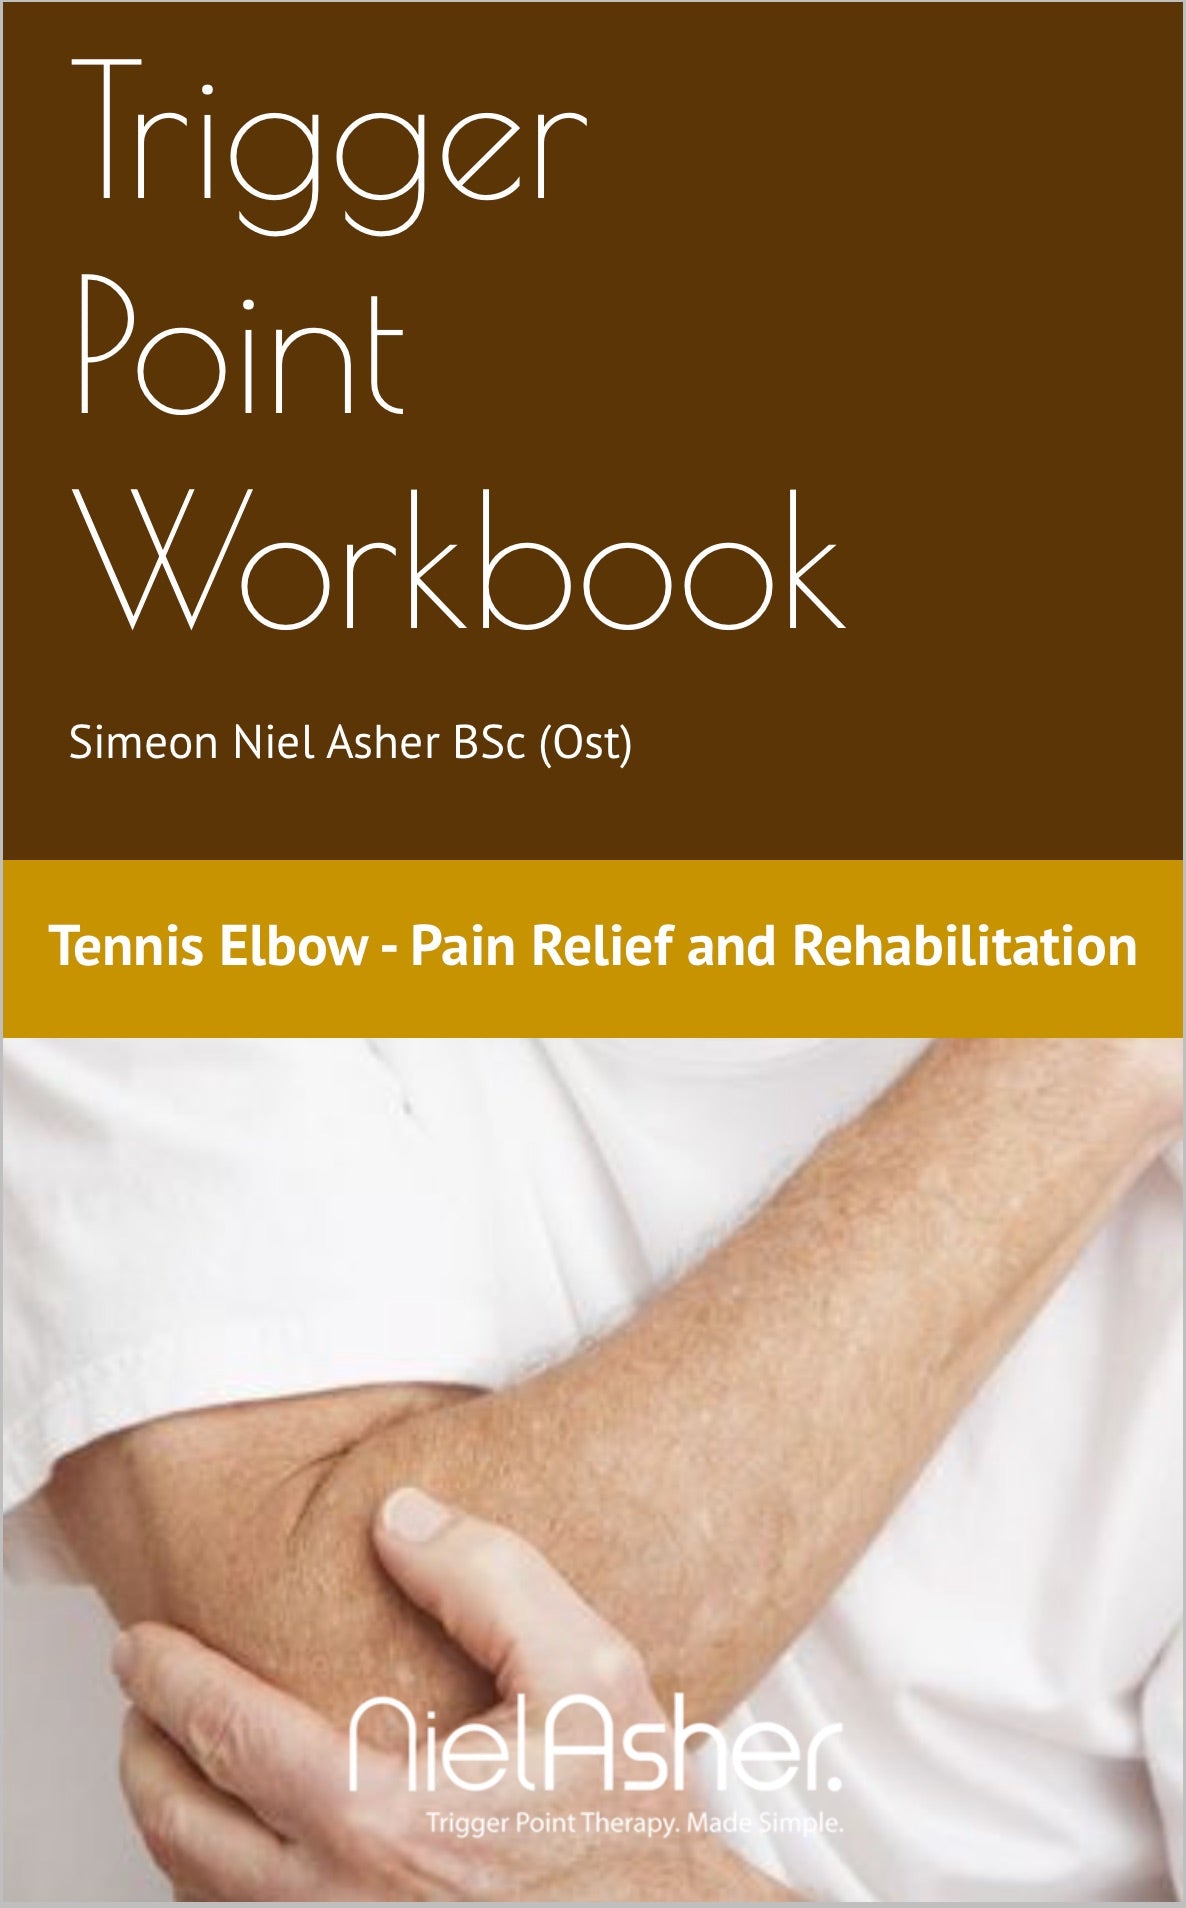 Tennis Elbow - Trigger Point Workbook (Digital Download)